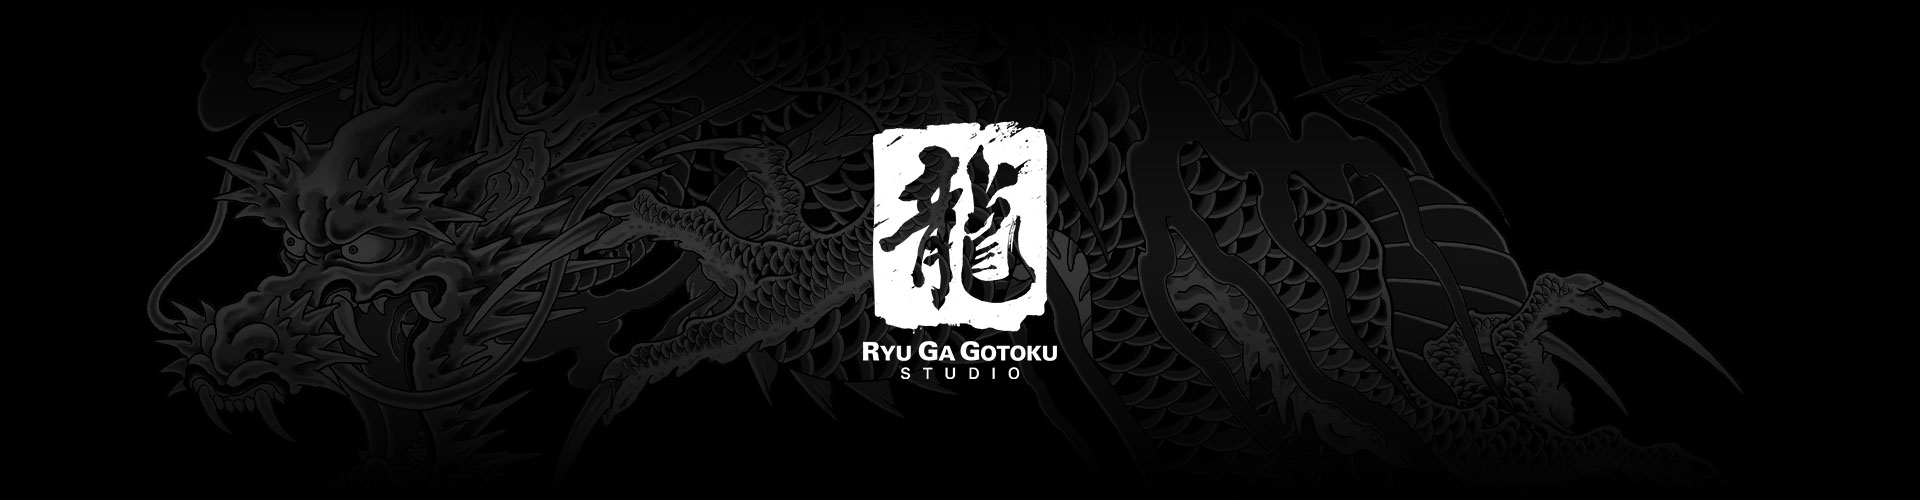 Logótipo da Ryu Ga Gotoku Studio com um fundo cinzento com uma tatuagem de um dragão.